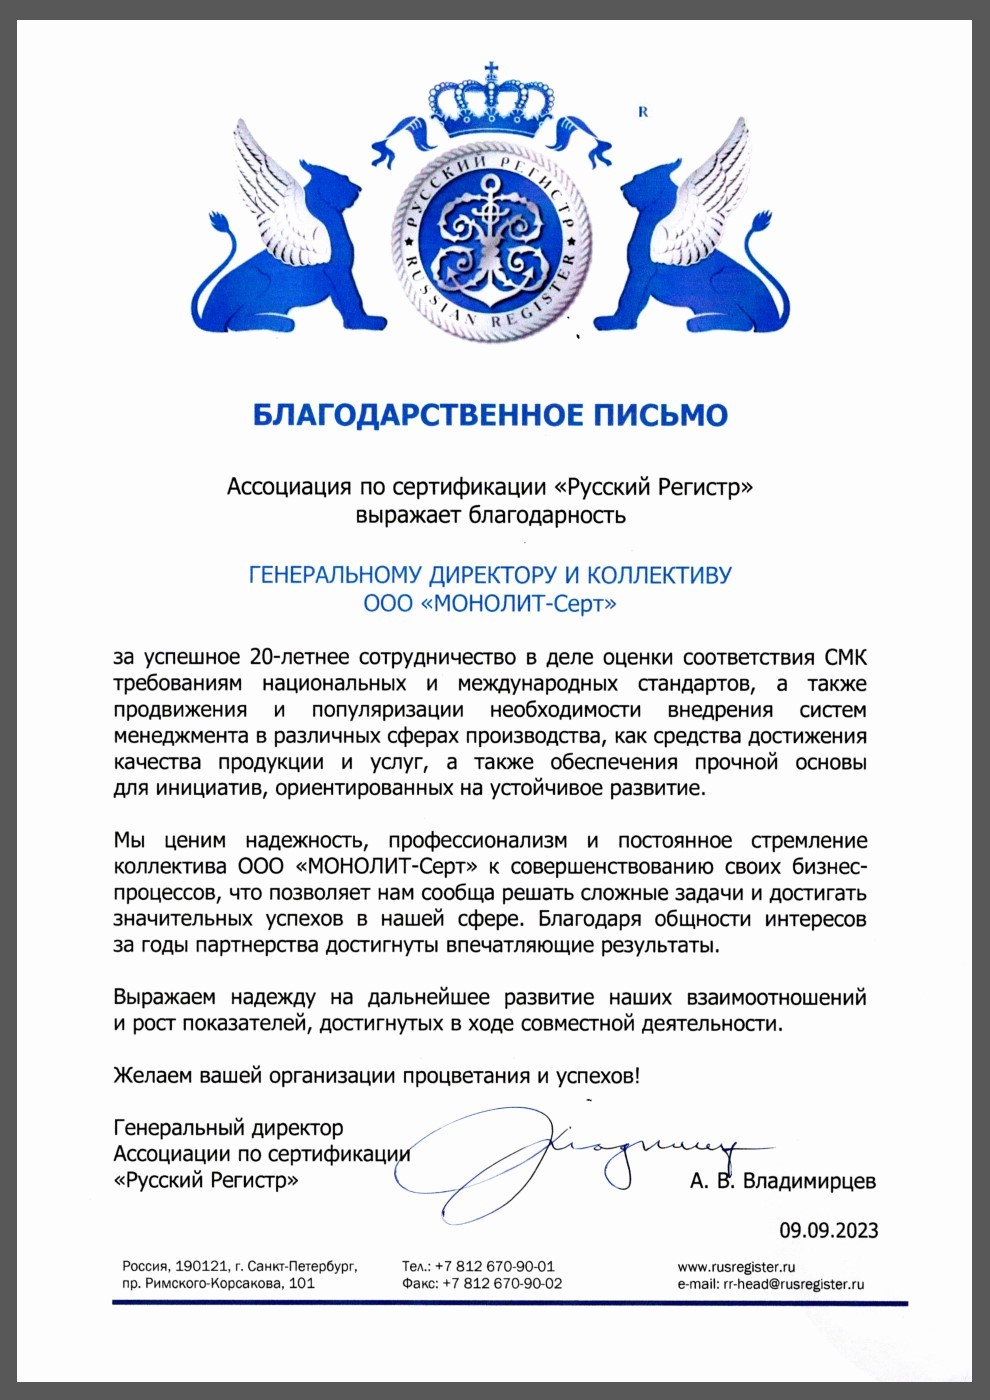 Благодарственное письмо Ассоциации по сертификации "Русский регистр"